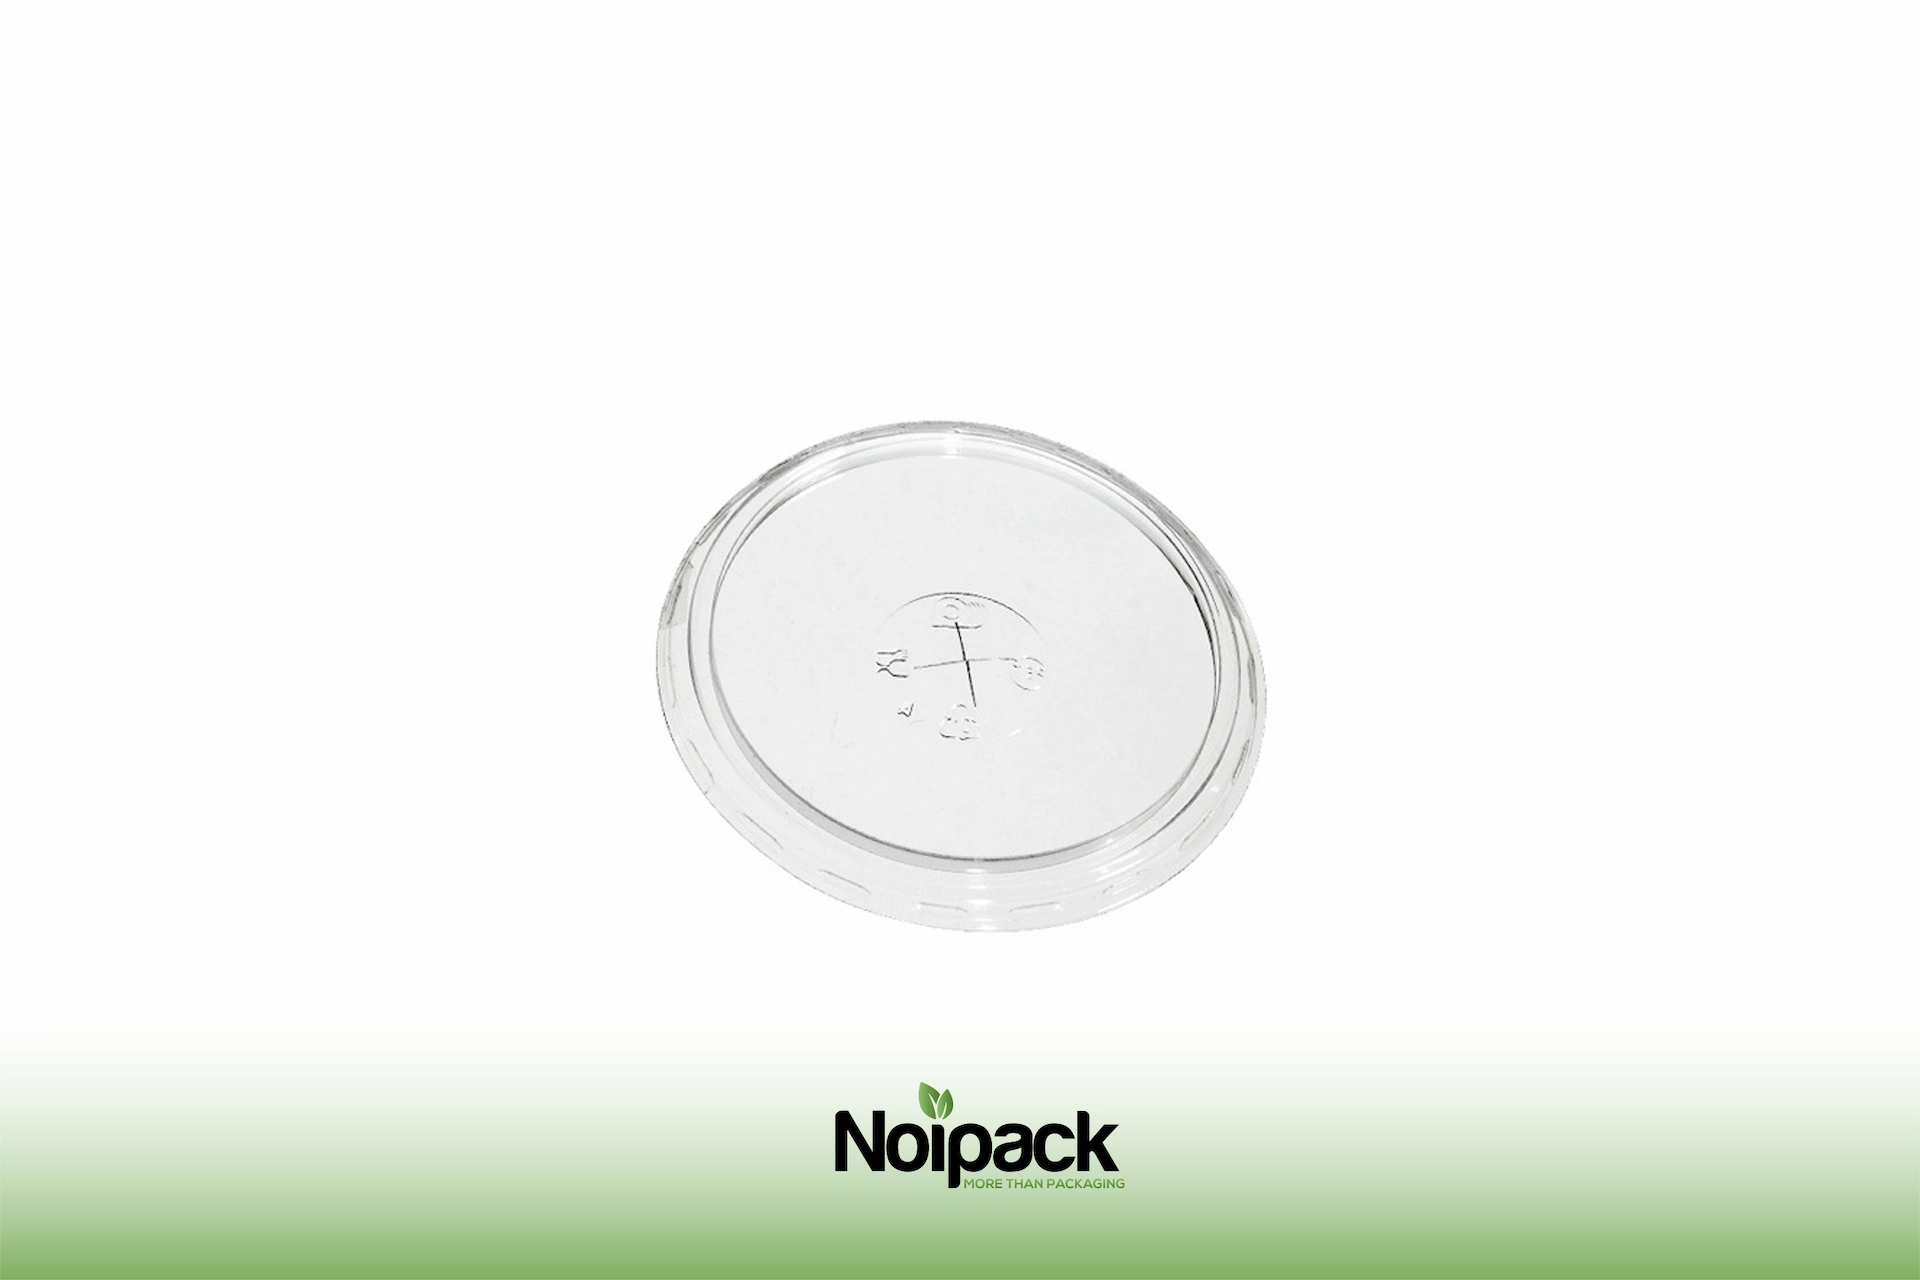 Noipack flat lid 200-250ml rPET